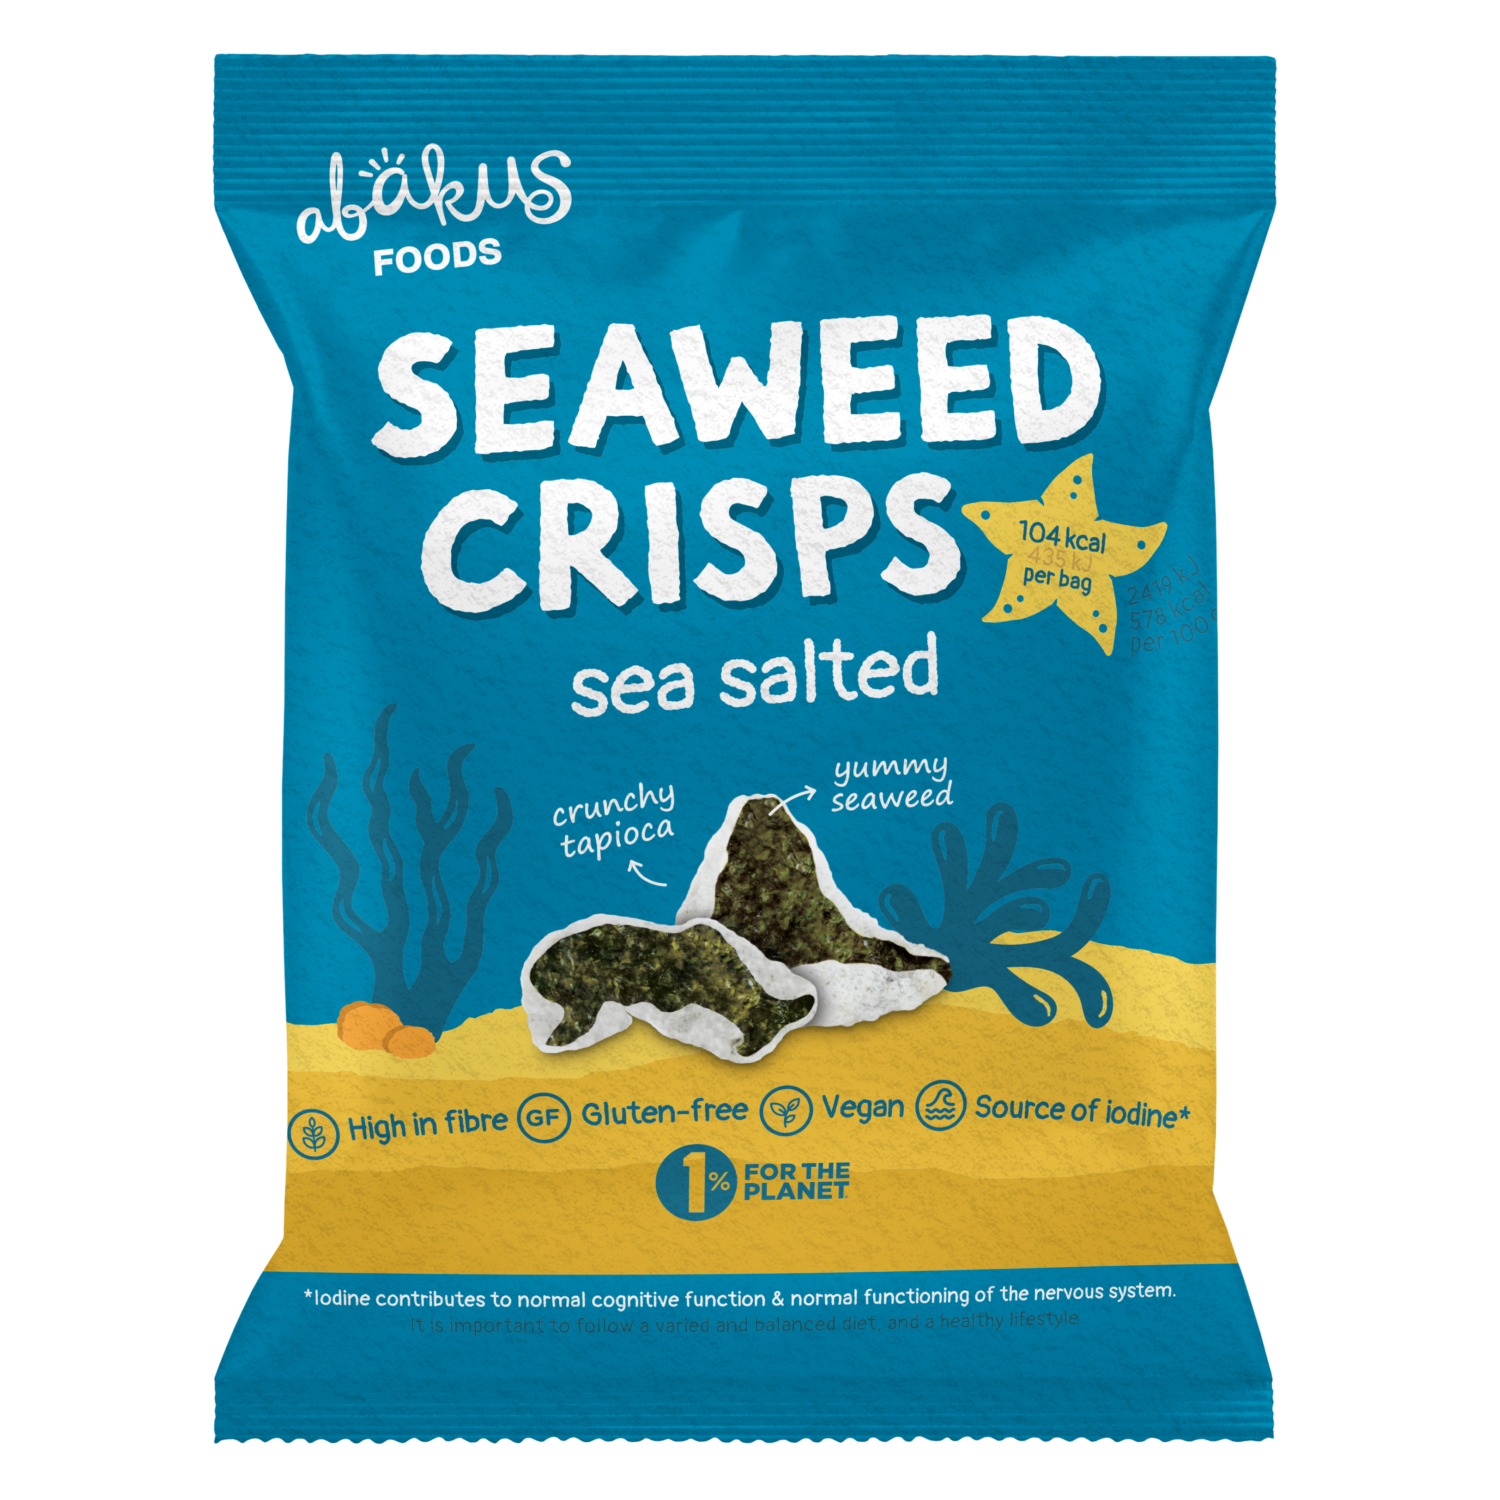 Abakus Foods Seaweed Crisps "Sea Salted"